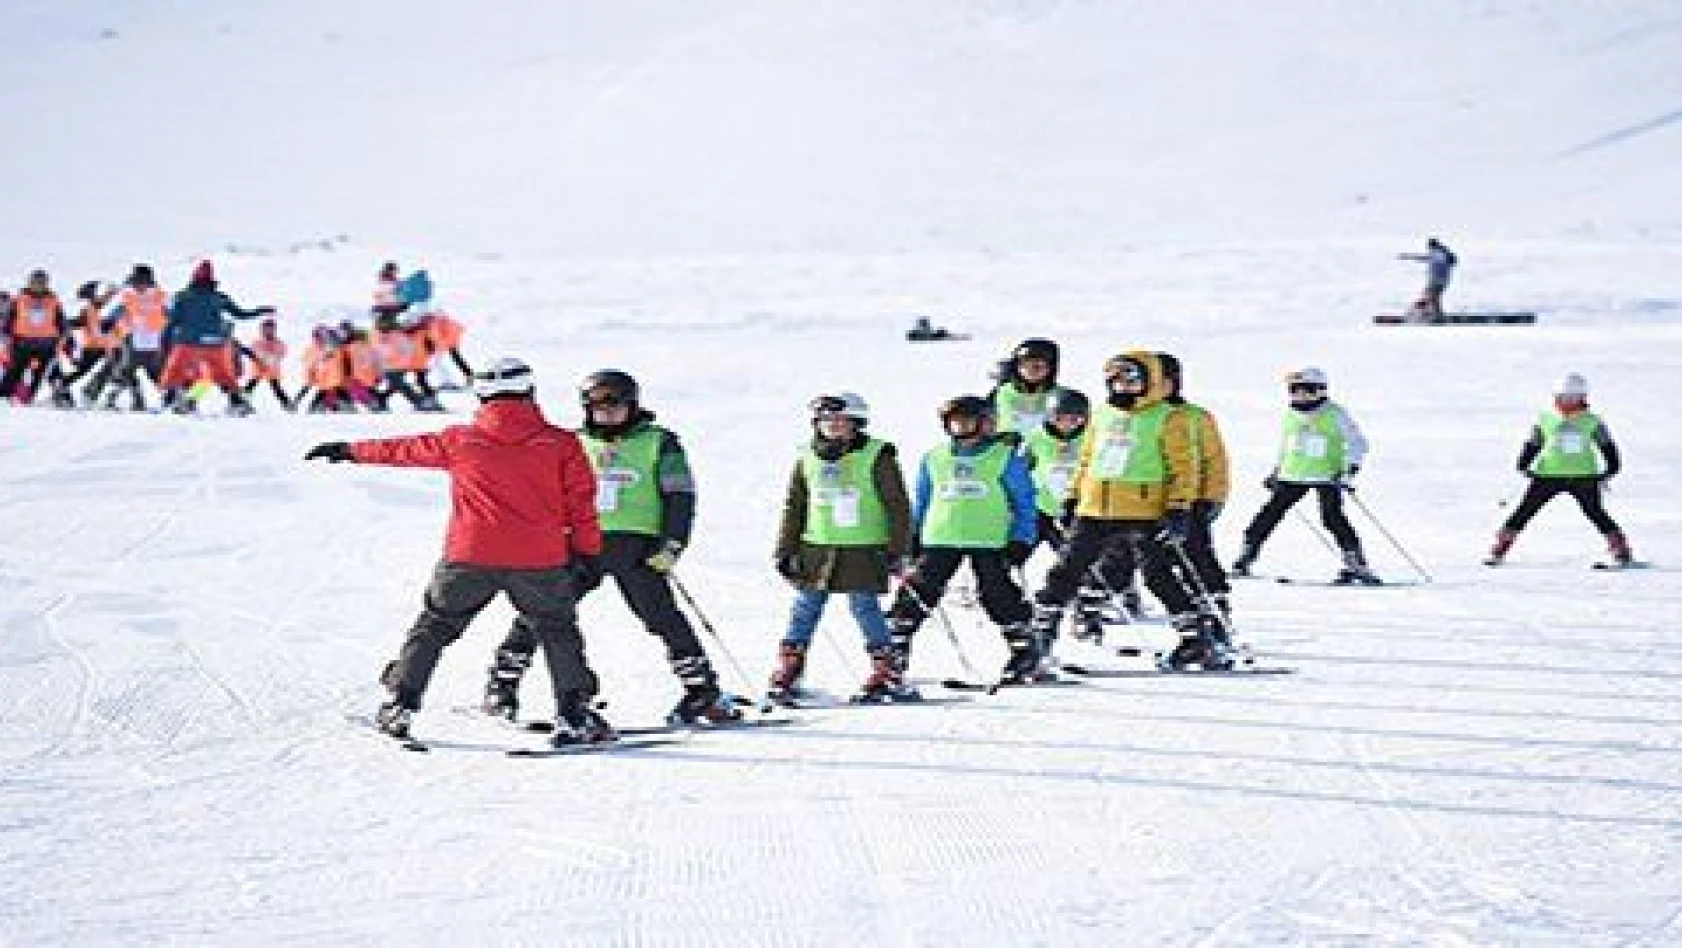 2 bin kişi kayak öğrendi 